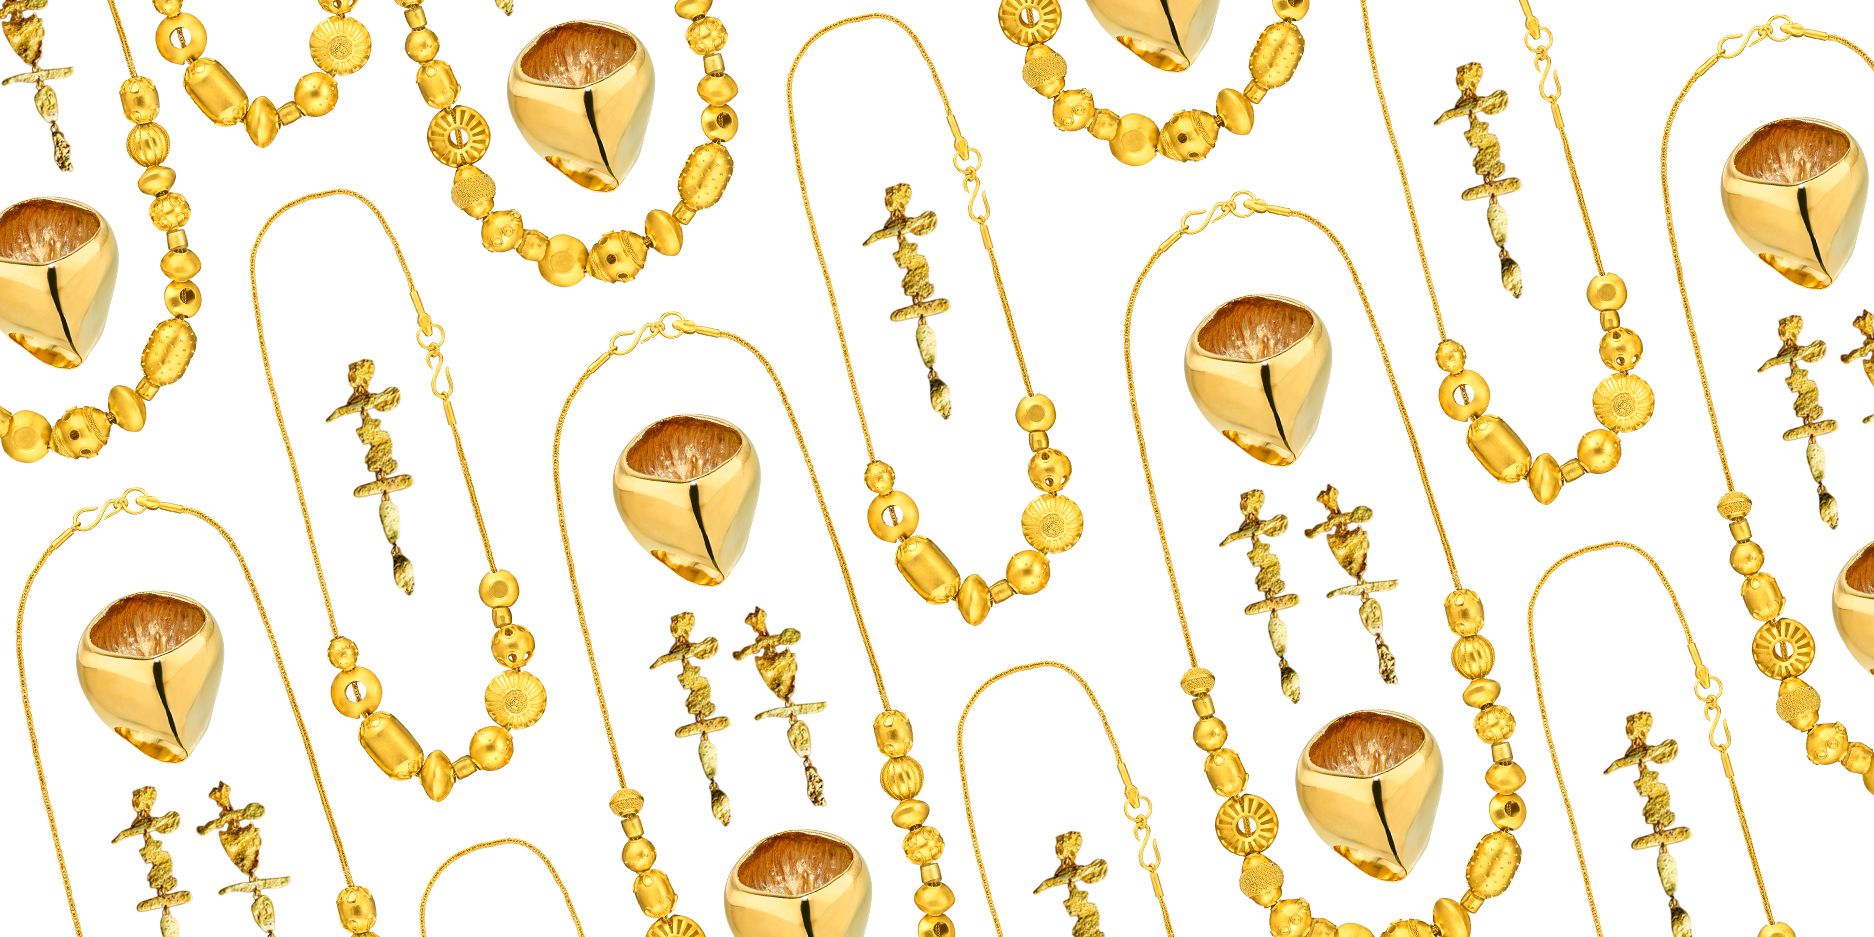 Goldsmiths 9ct White Gold Diamond Cross Pendant & Earrings Set 5.44.1714 |  Goldsmiths